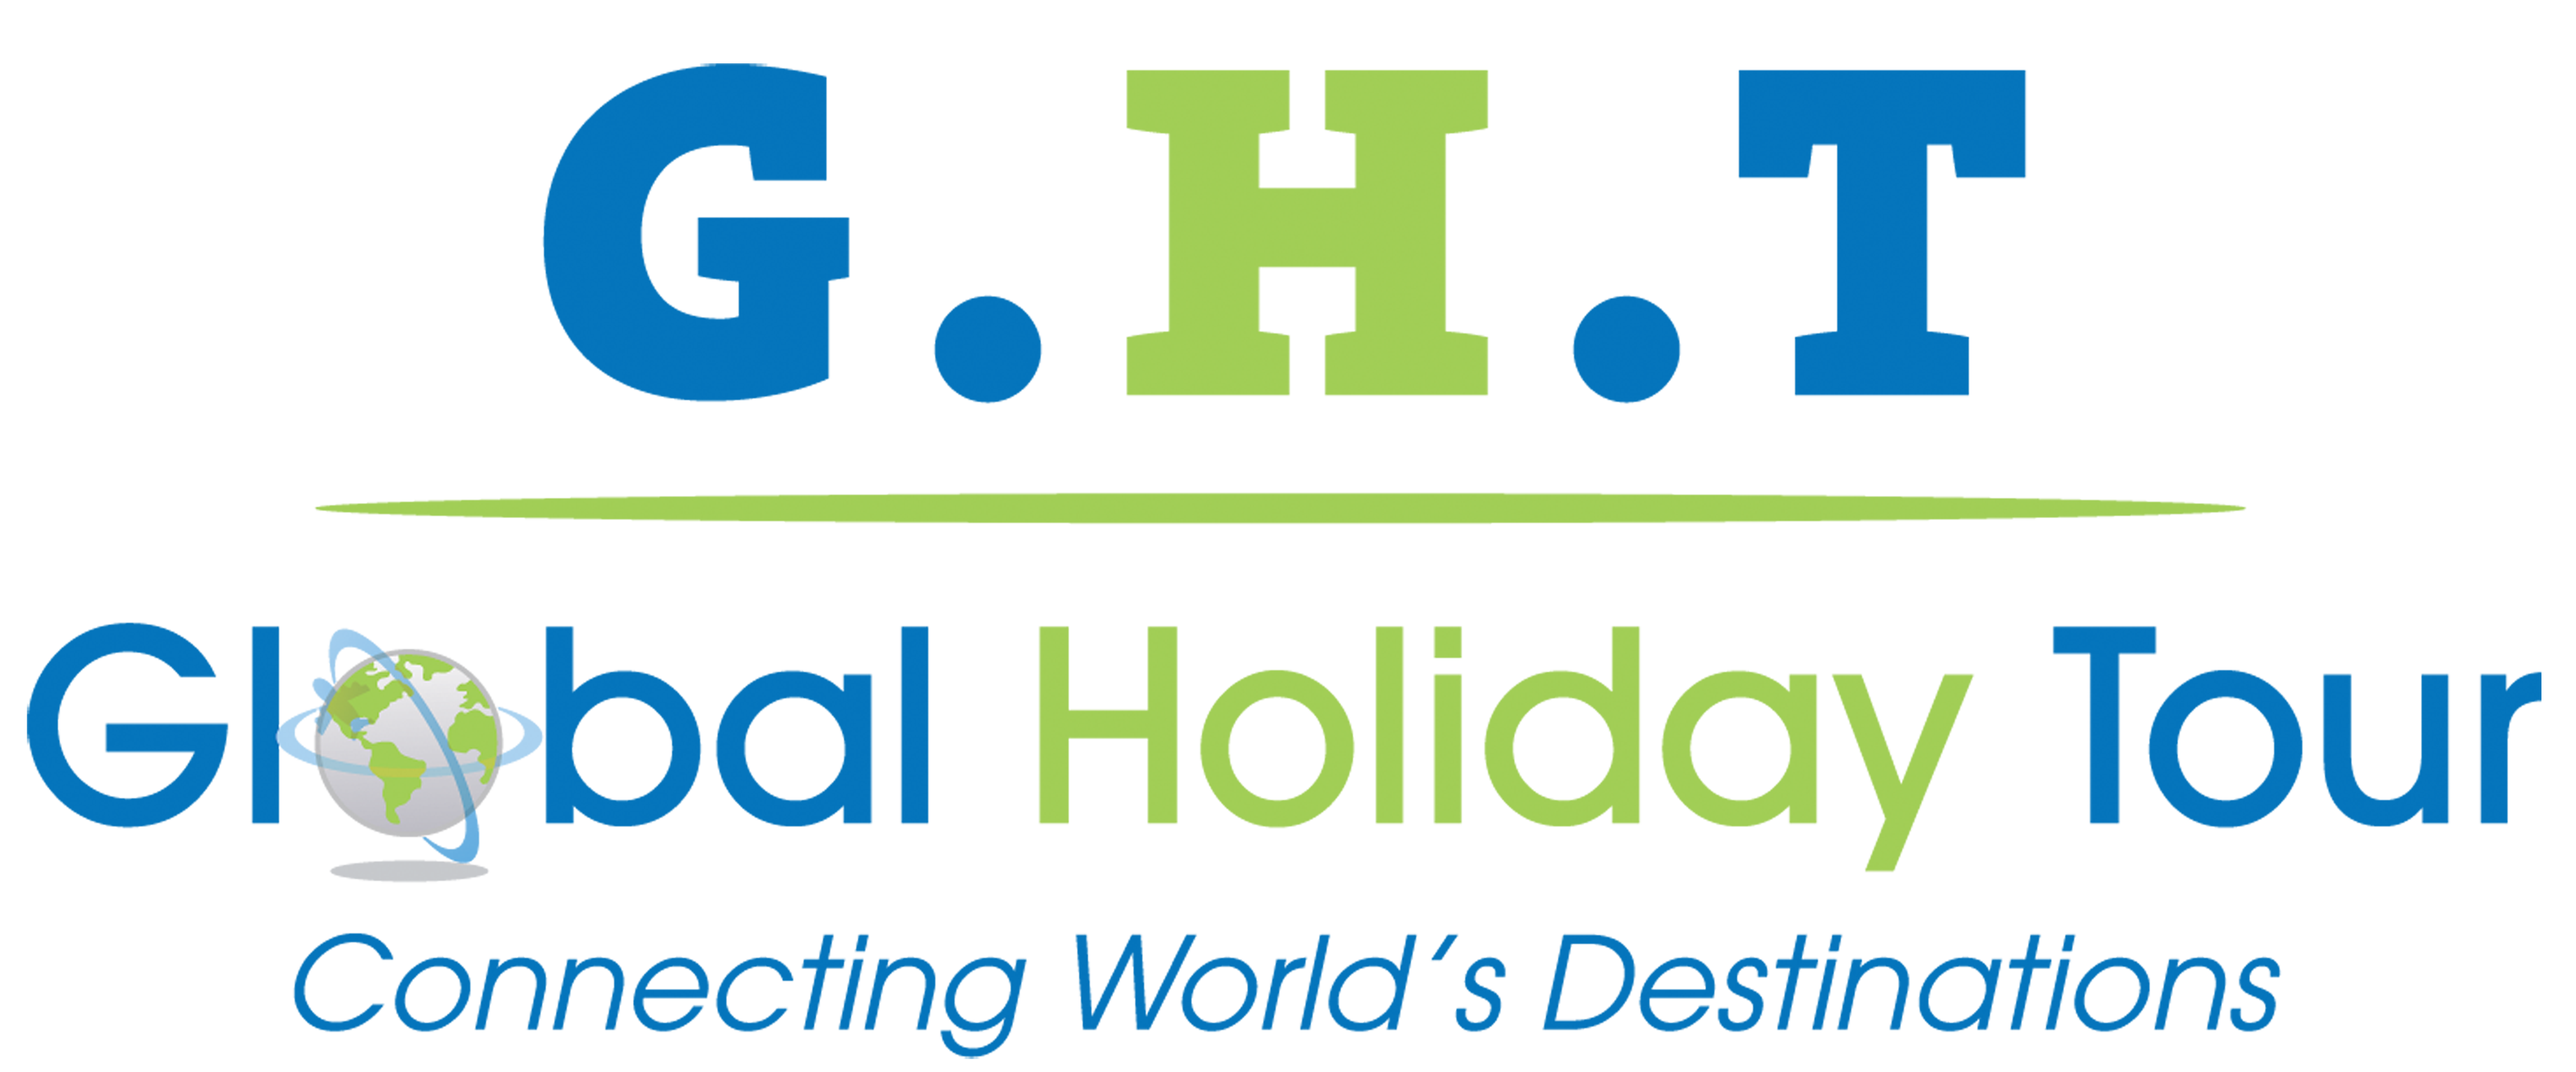 CÔNG TY DU LỊCH KỲ NGHỈ TOÀN CẦU - Global Holiday Tour (G.H.T)